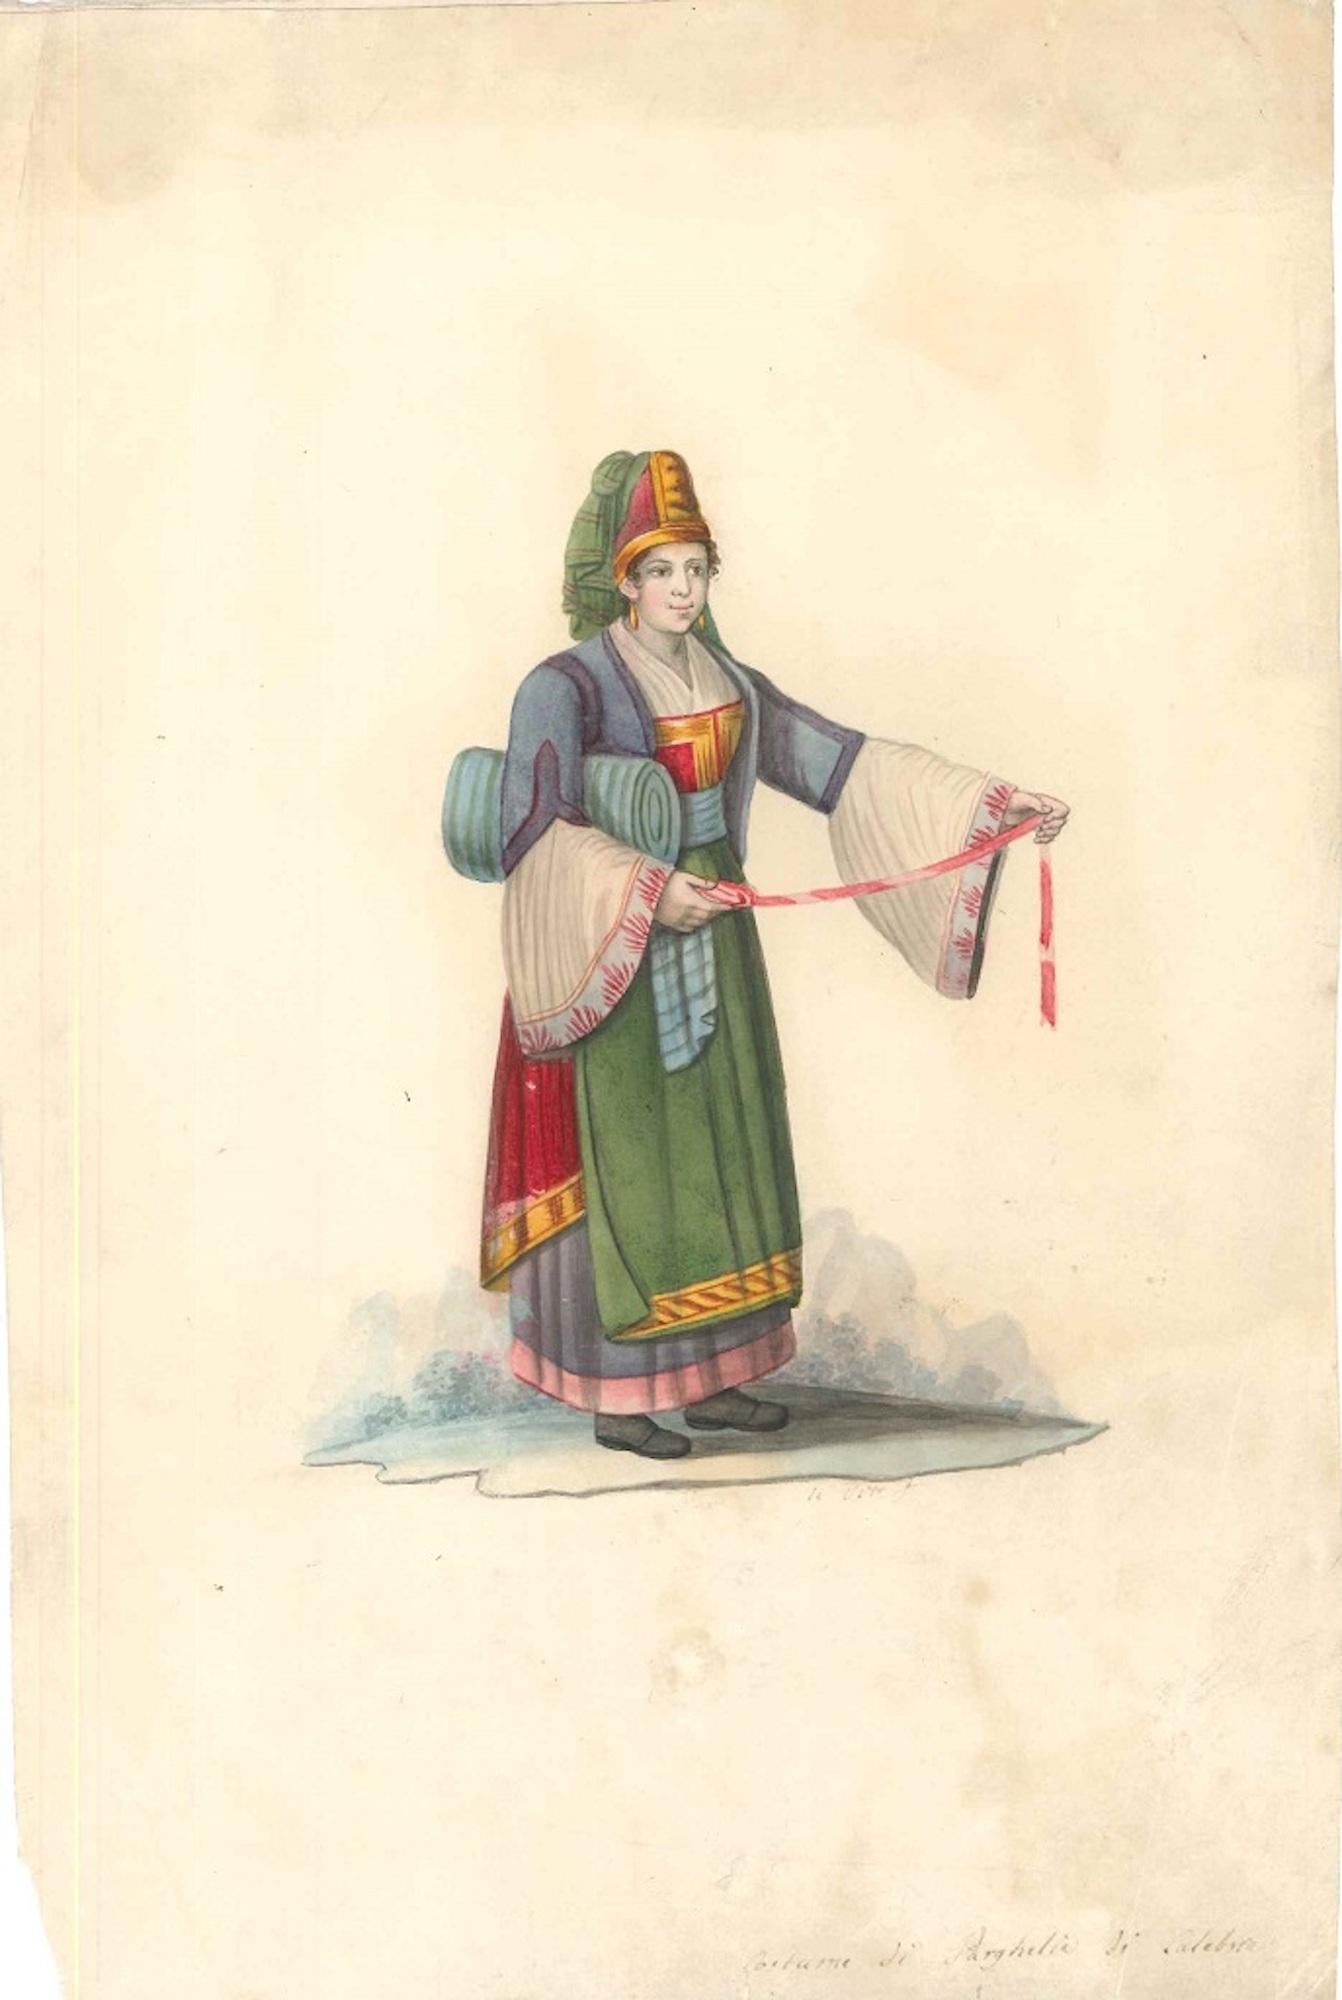 Kostüm di Parghelia di Calabria - Aquarell von M. De Vito - 1820 ca. – Art von Michela De Vito